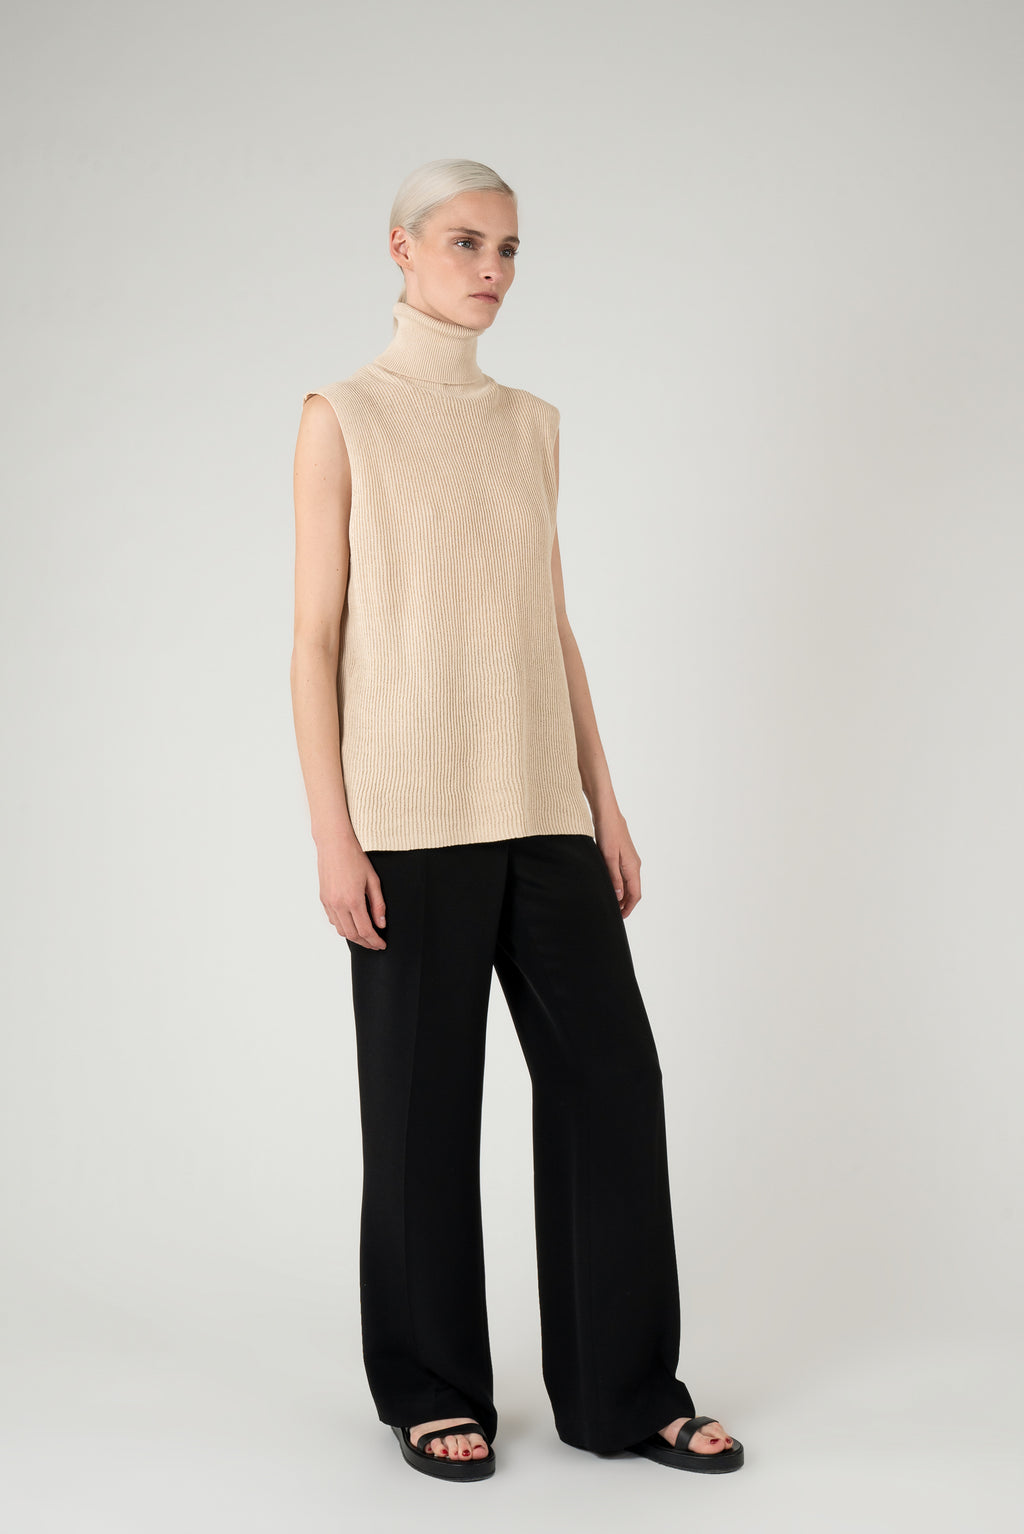 Yeva knitted top | Beige - Cotton